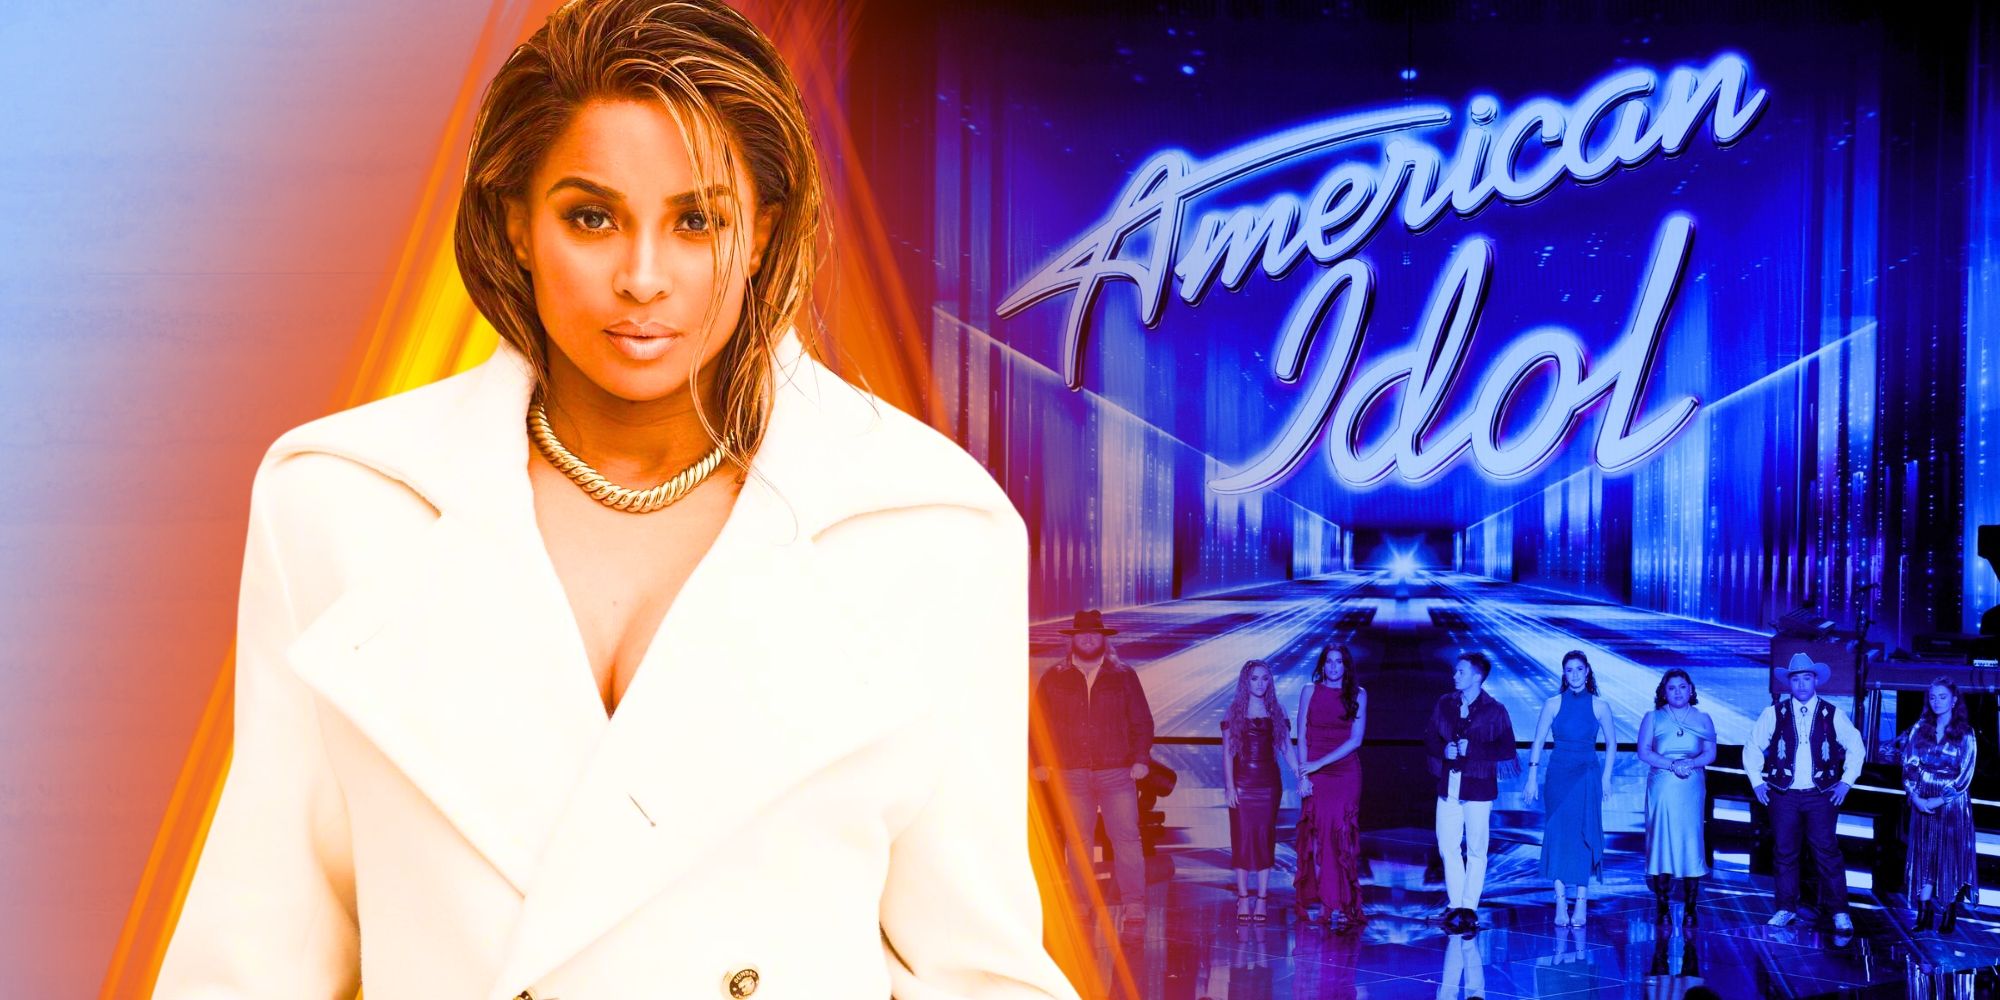 Ciara asesora a los 7 mejores concursantes de la temporada 22 de American Idol mientras se anuncia un nuevo tema